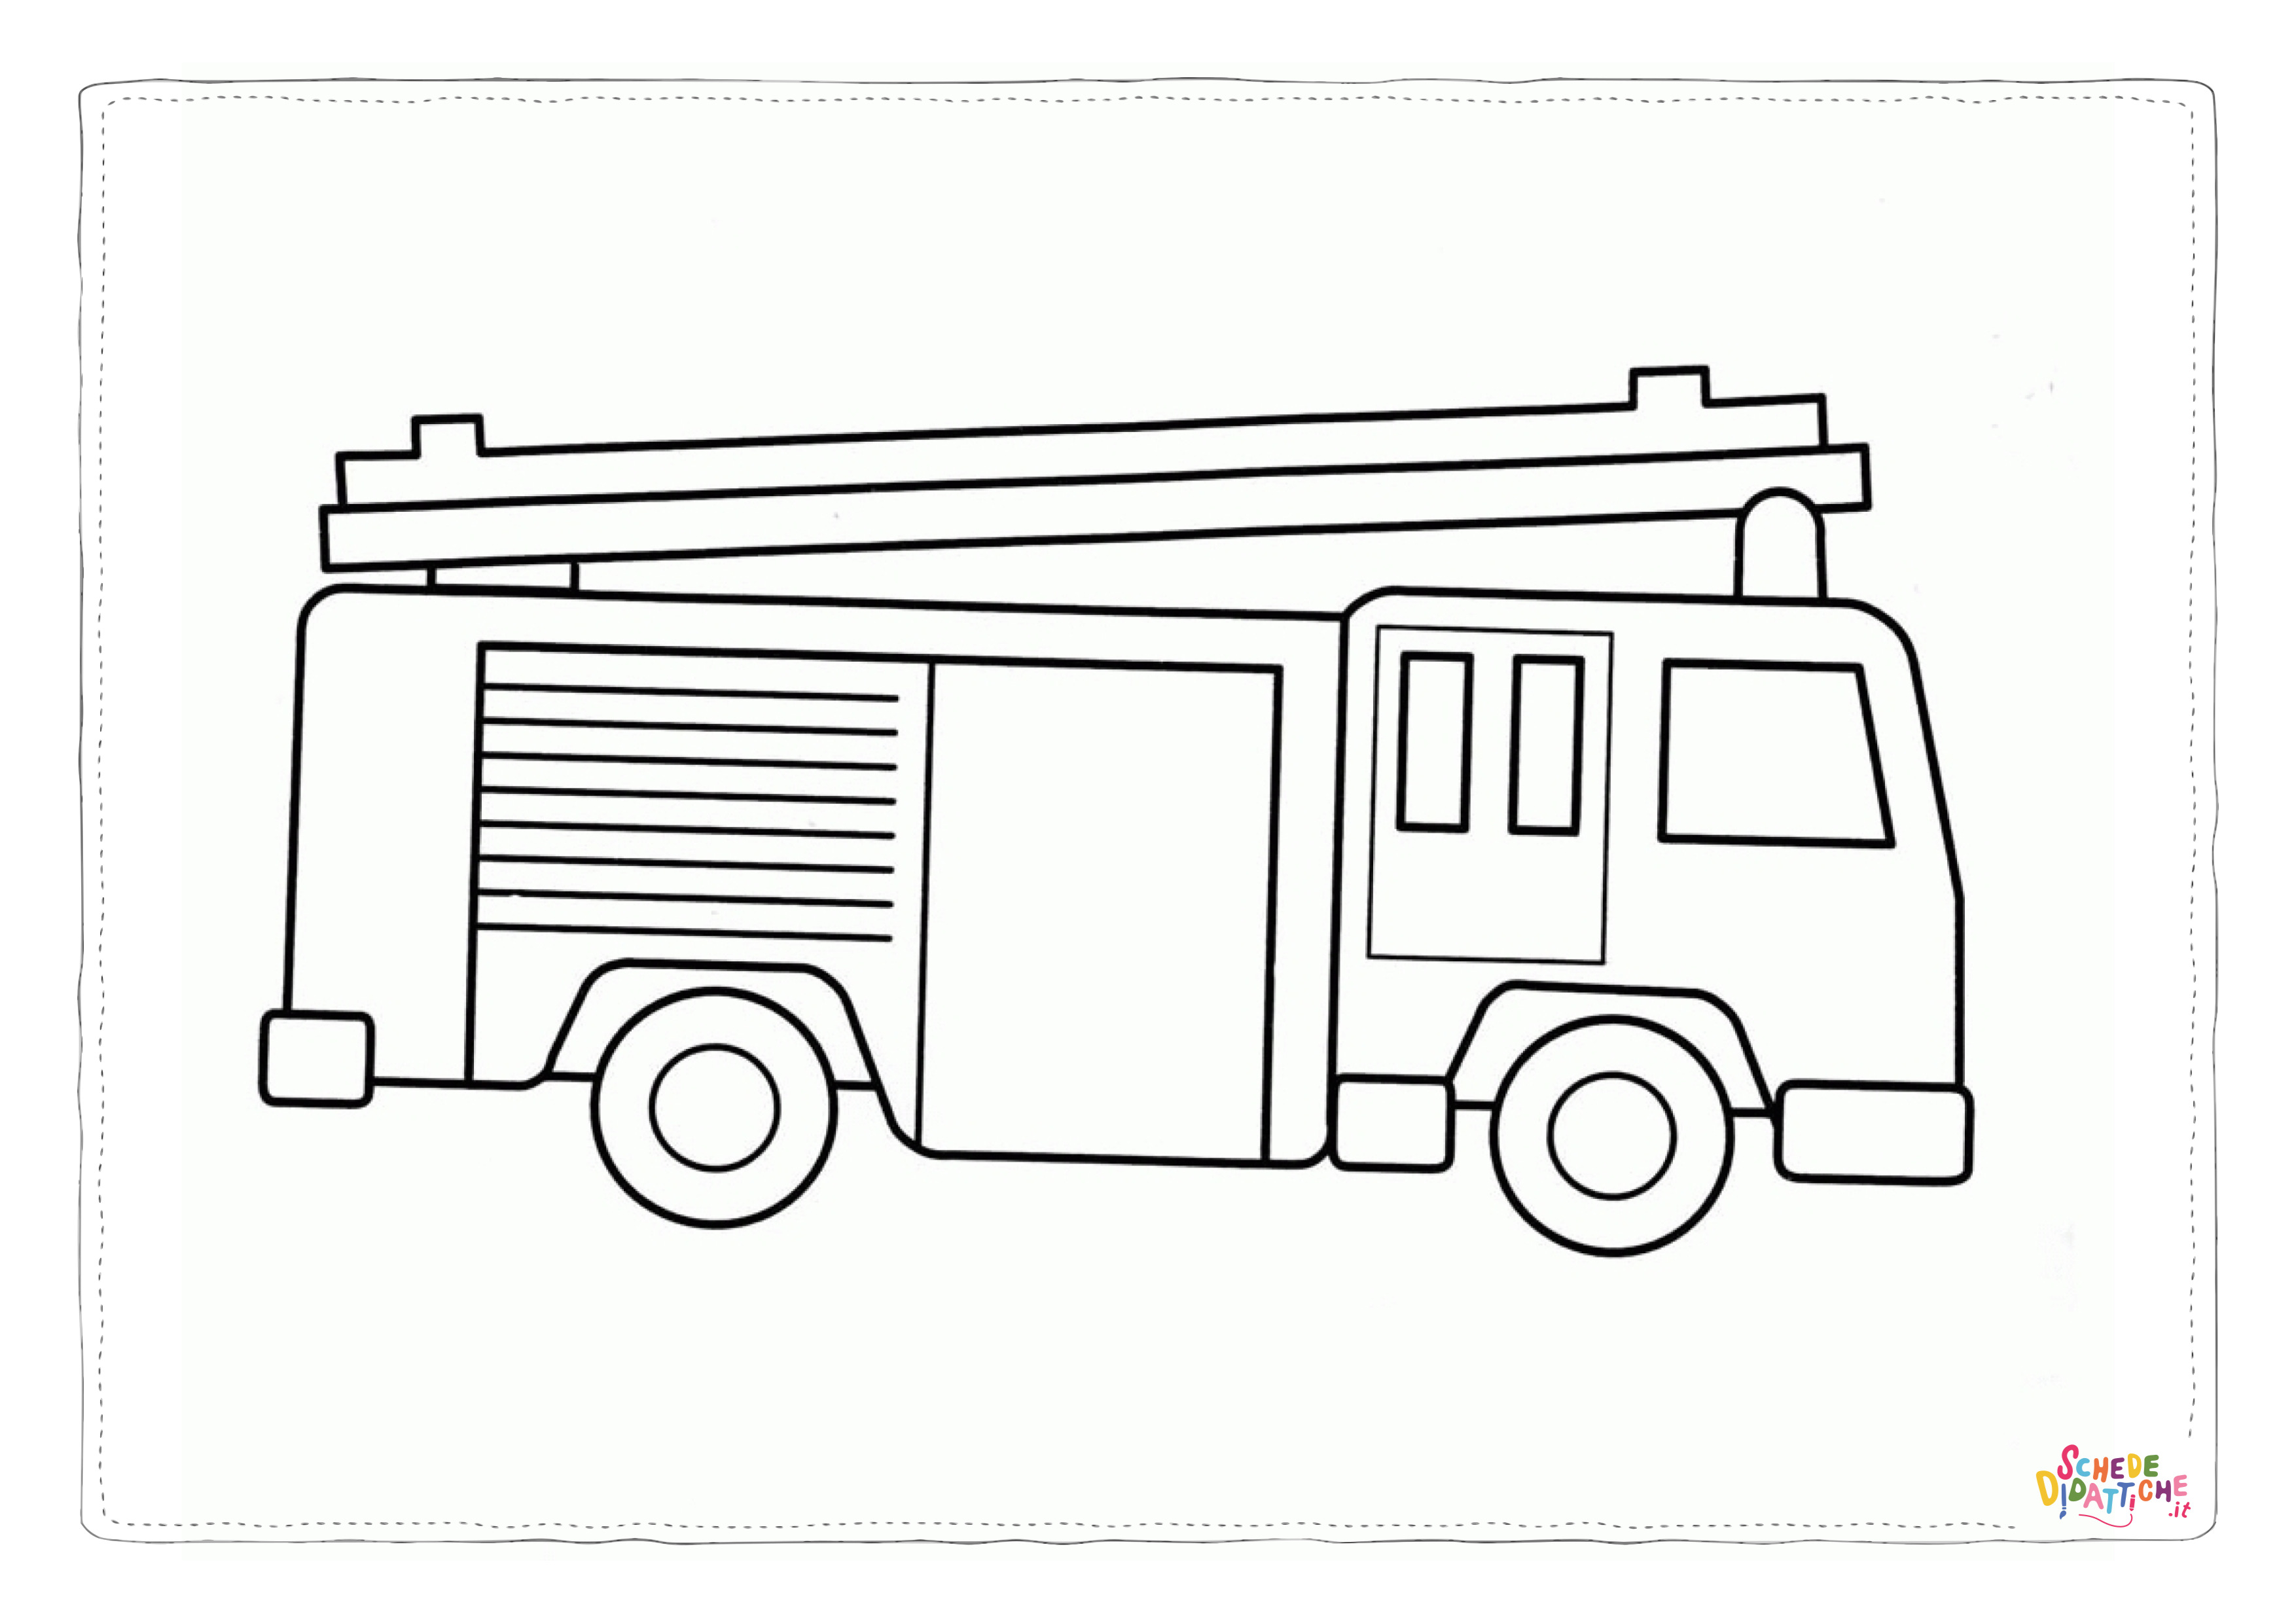 Disegno di camion dei pompieri da stampare e colorare 32